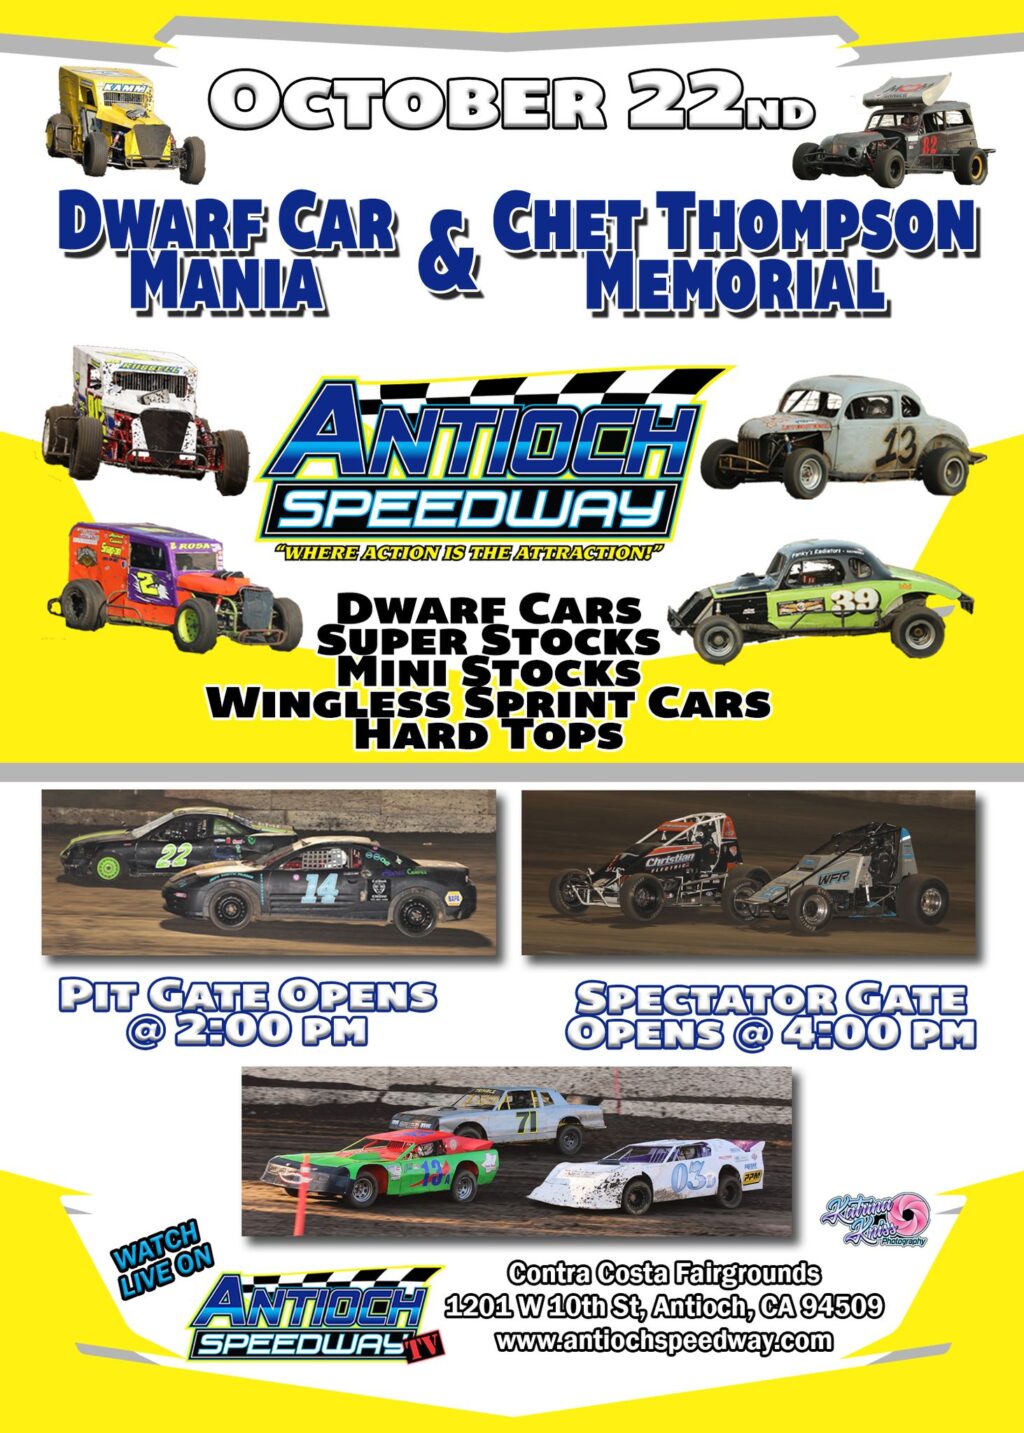 Antioch Speedway Dwarf Car Mania